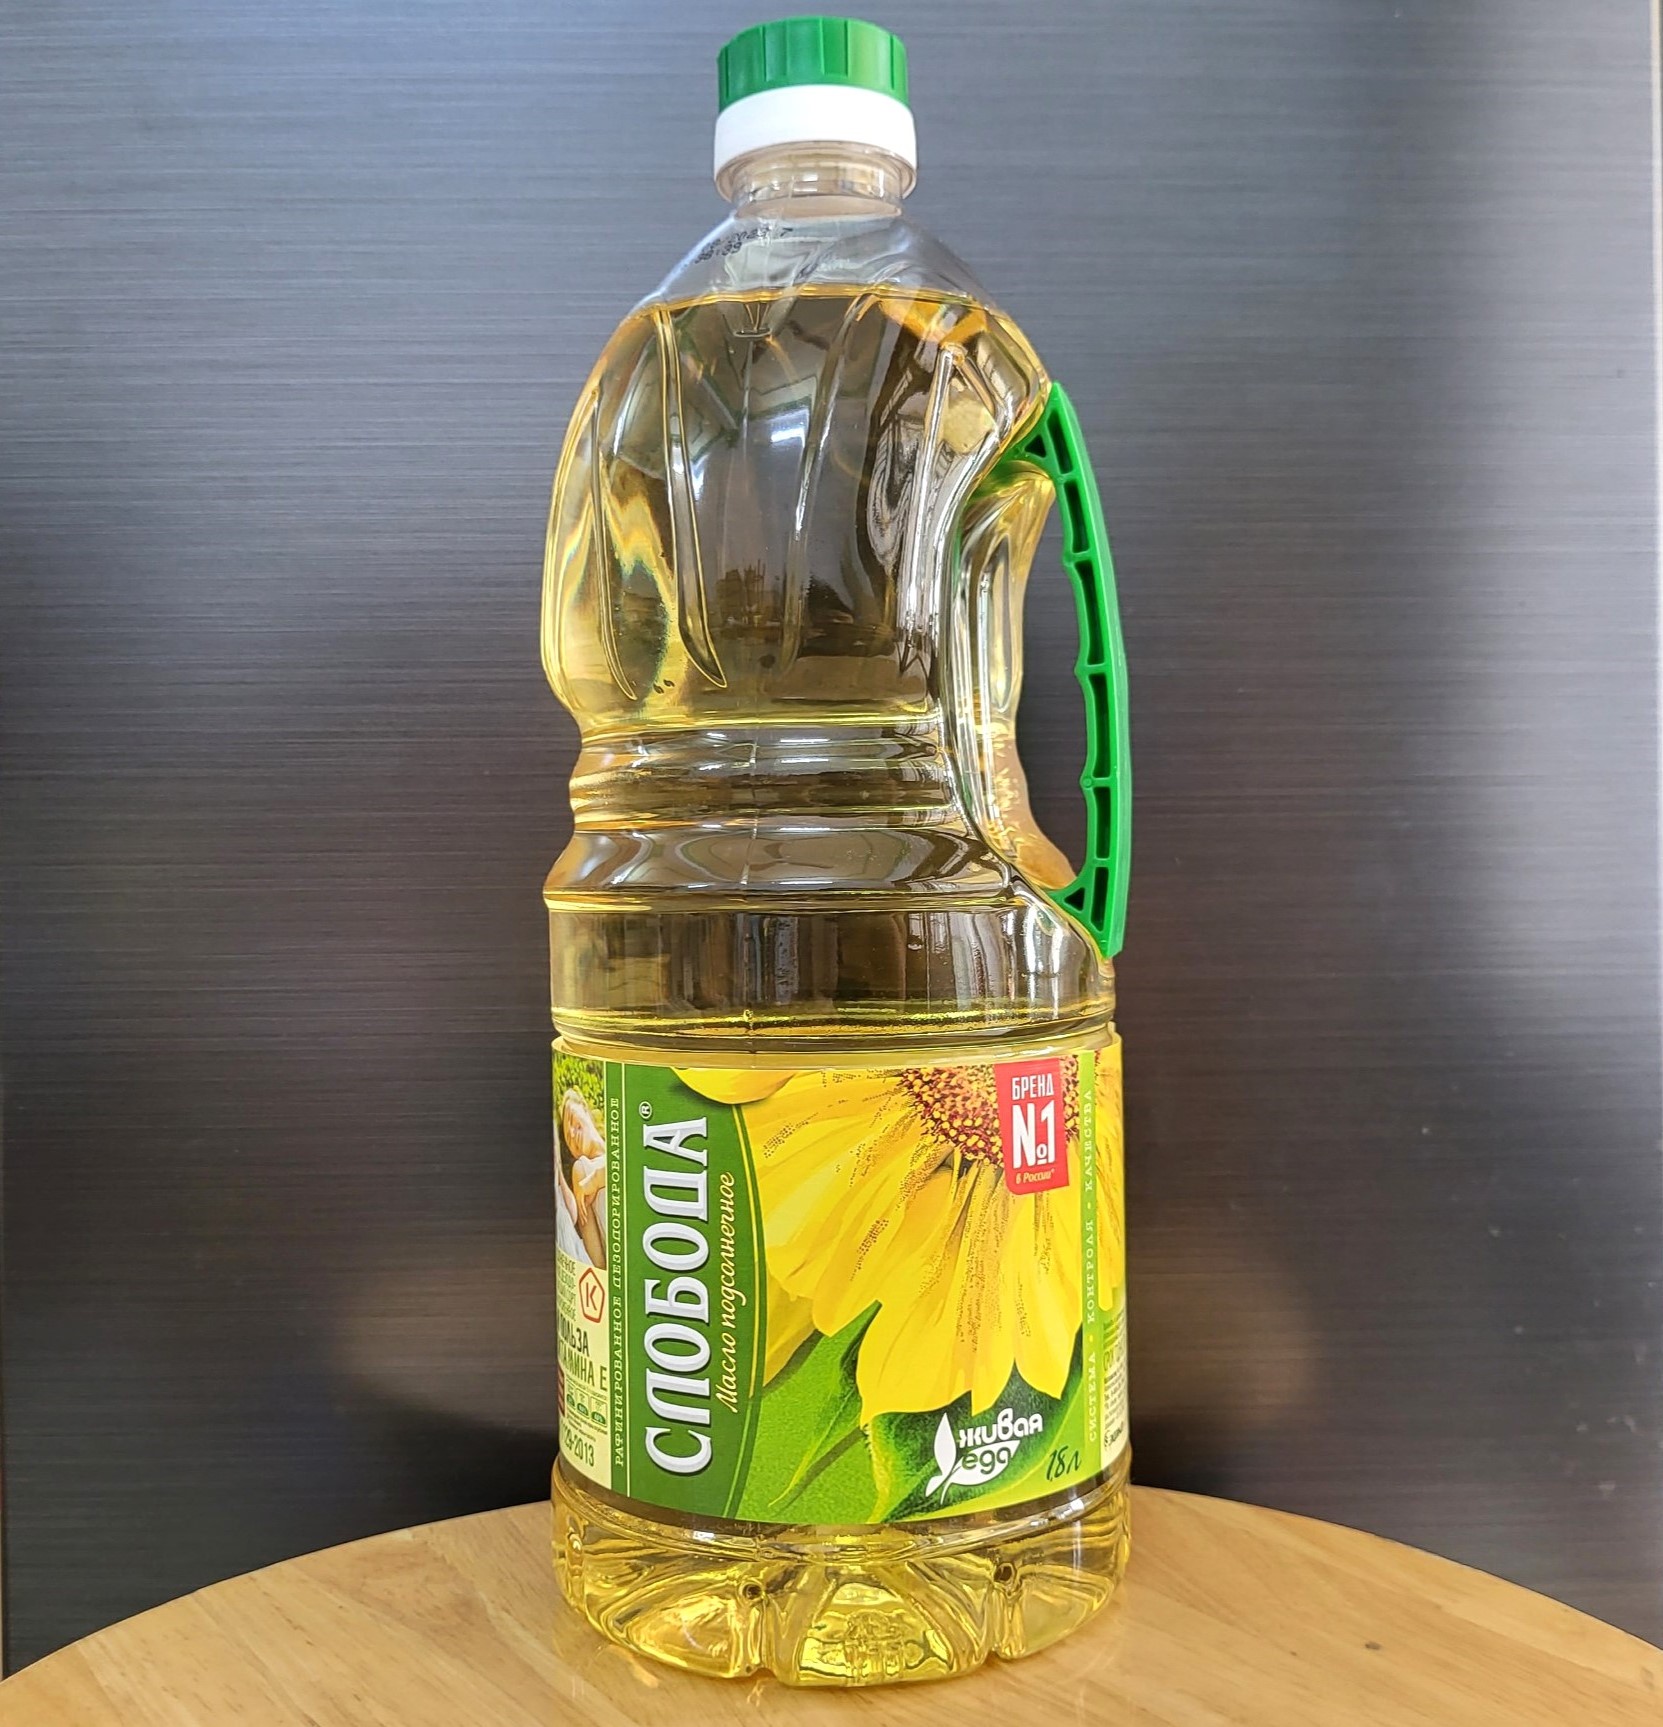 SLOBODA Chai Lớn 1.8 L DẦU HƯỚNG DƯƠNG HỮU CƠ NGA Organic Sunflower Oil